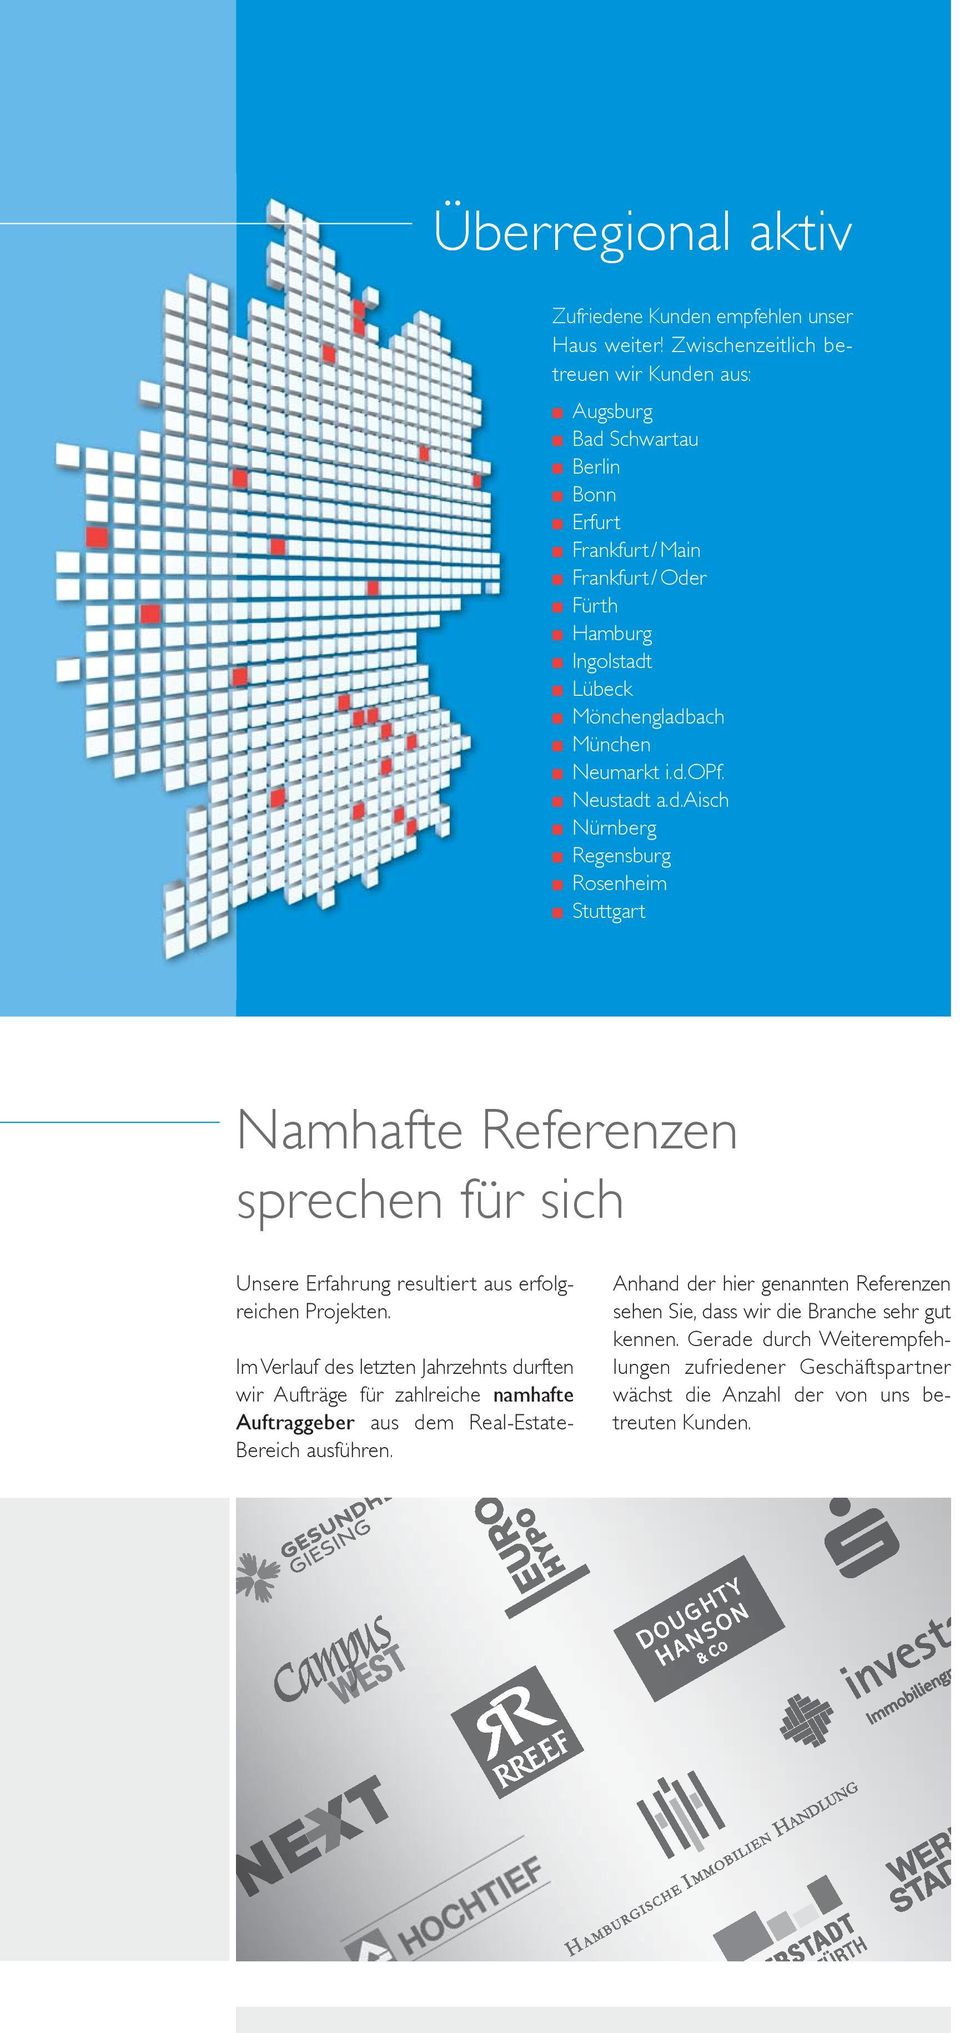 d.opf. Neustadt a.d.aisch Nürnberg Regensburg Rosenheim Stuttgart Namhafte Referenzen sprechen für sich Unsere Erfahrung resultiert aus erfolgreichen Projekten.